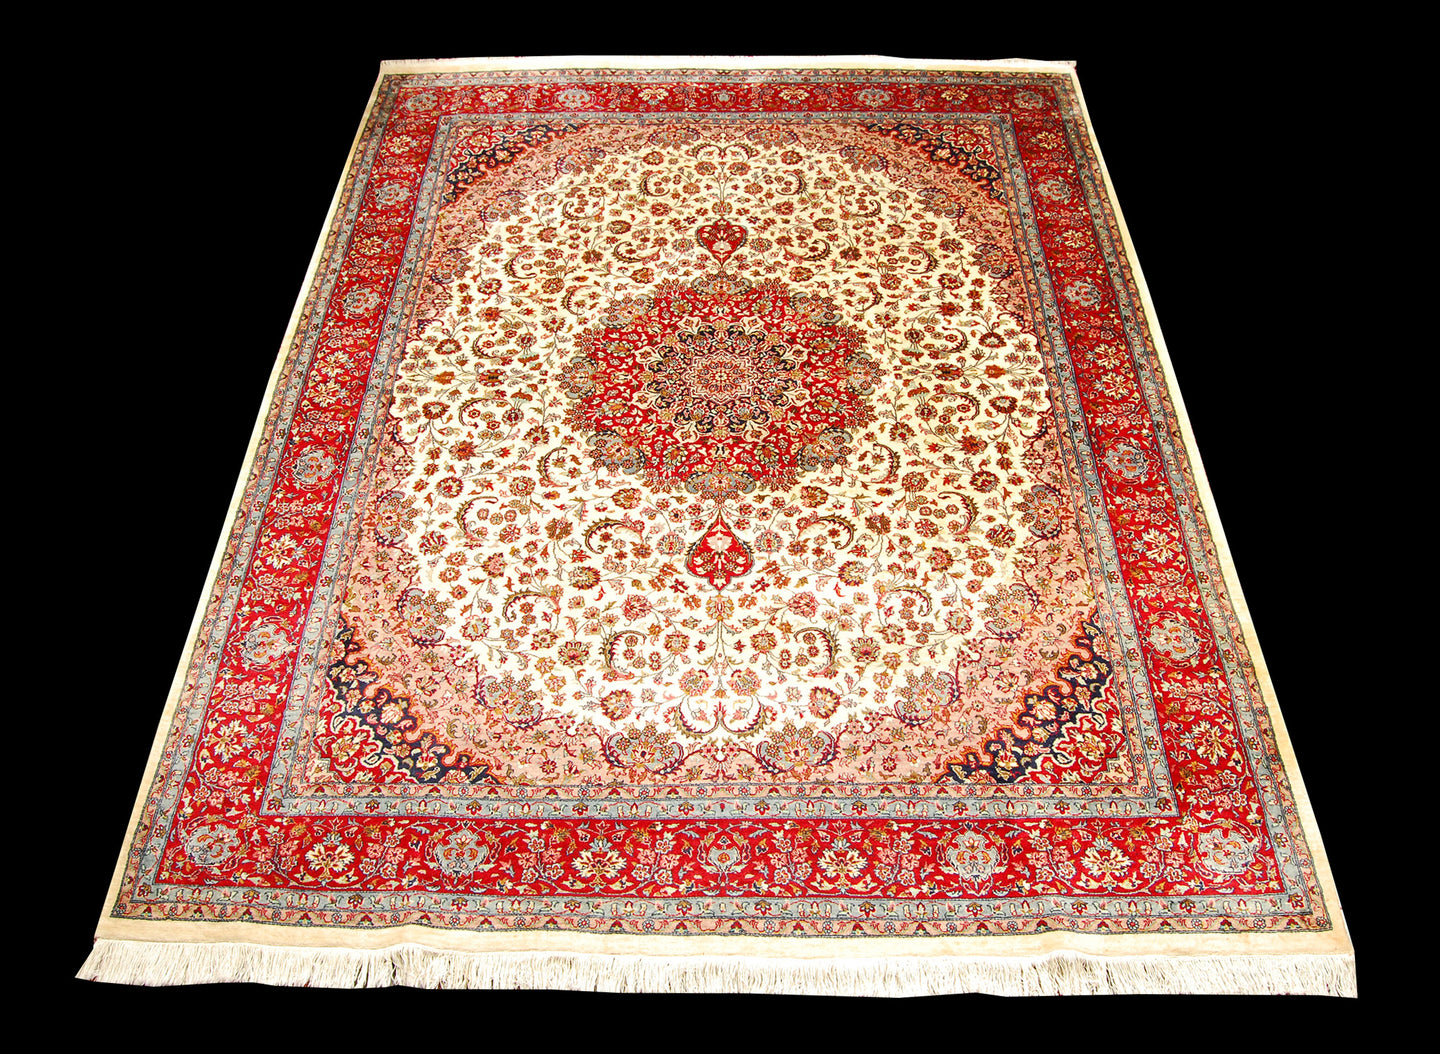 Original Authentic Hand Made Carpet Varanasi 310x245 CM